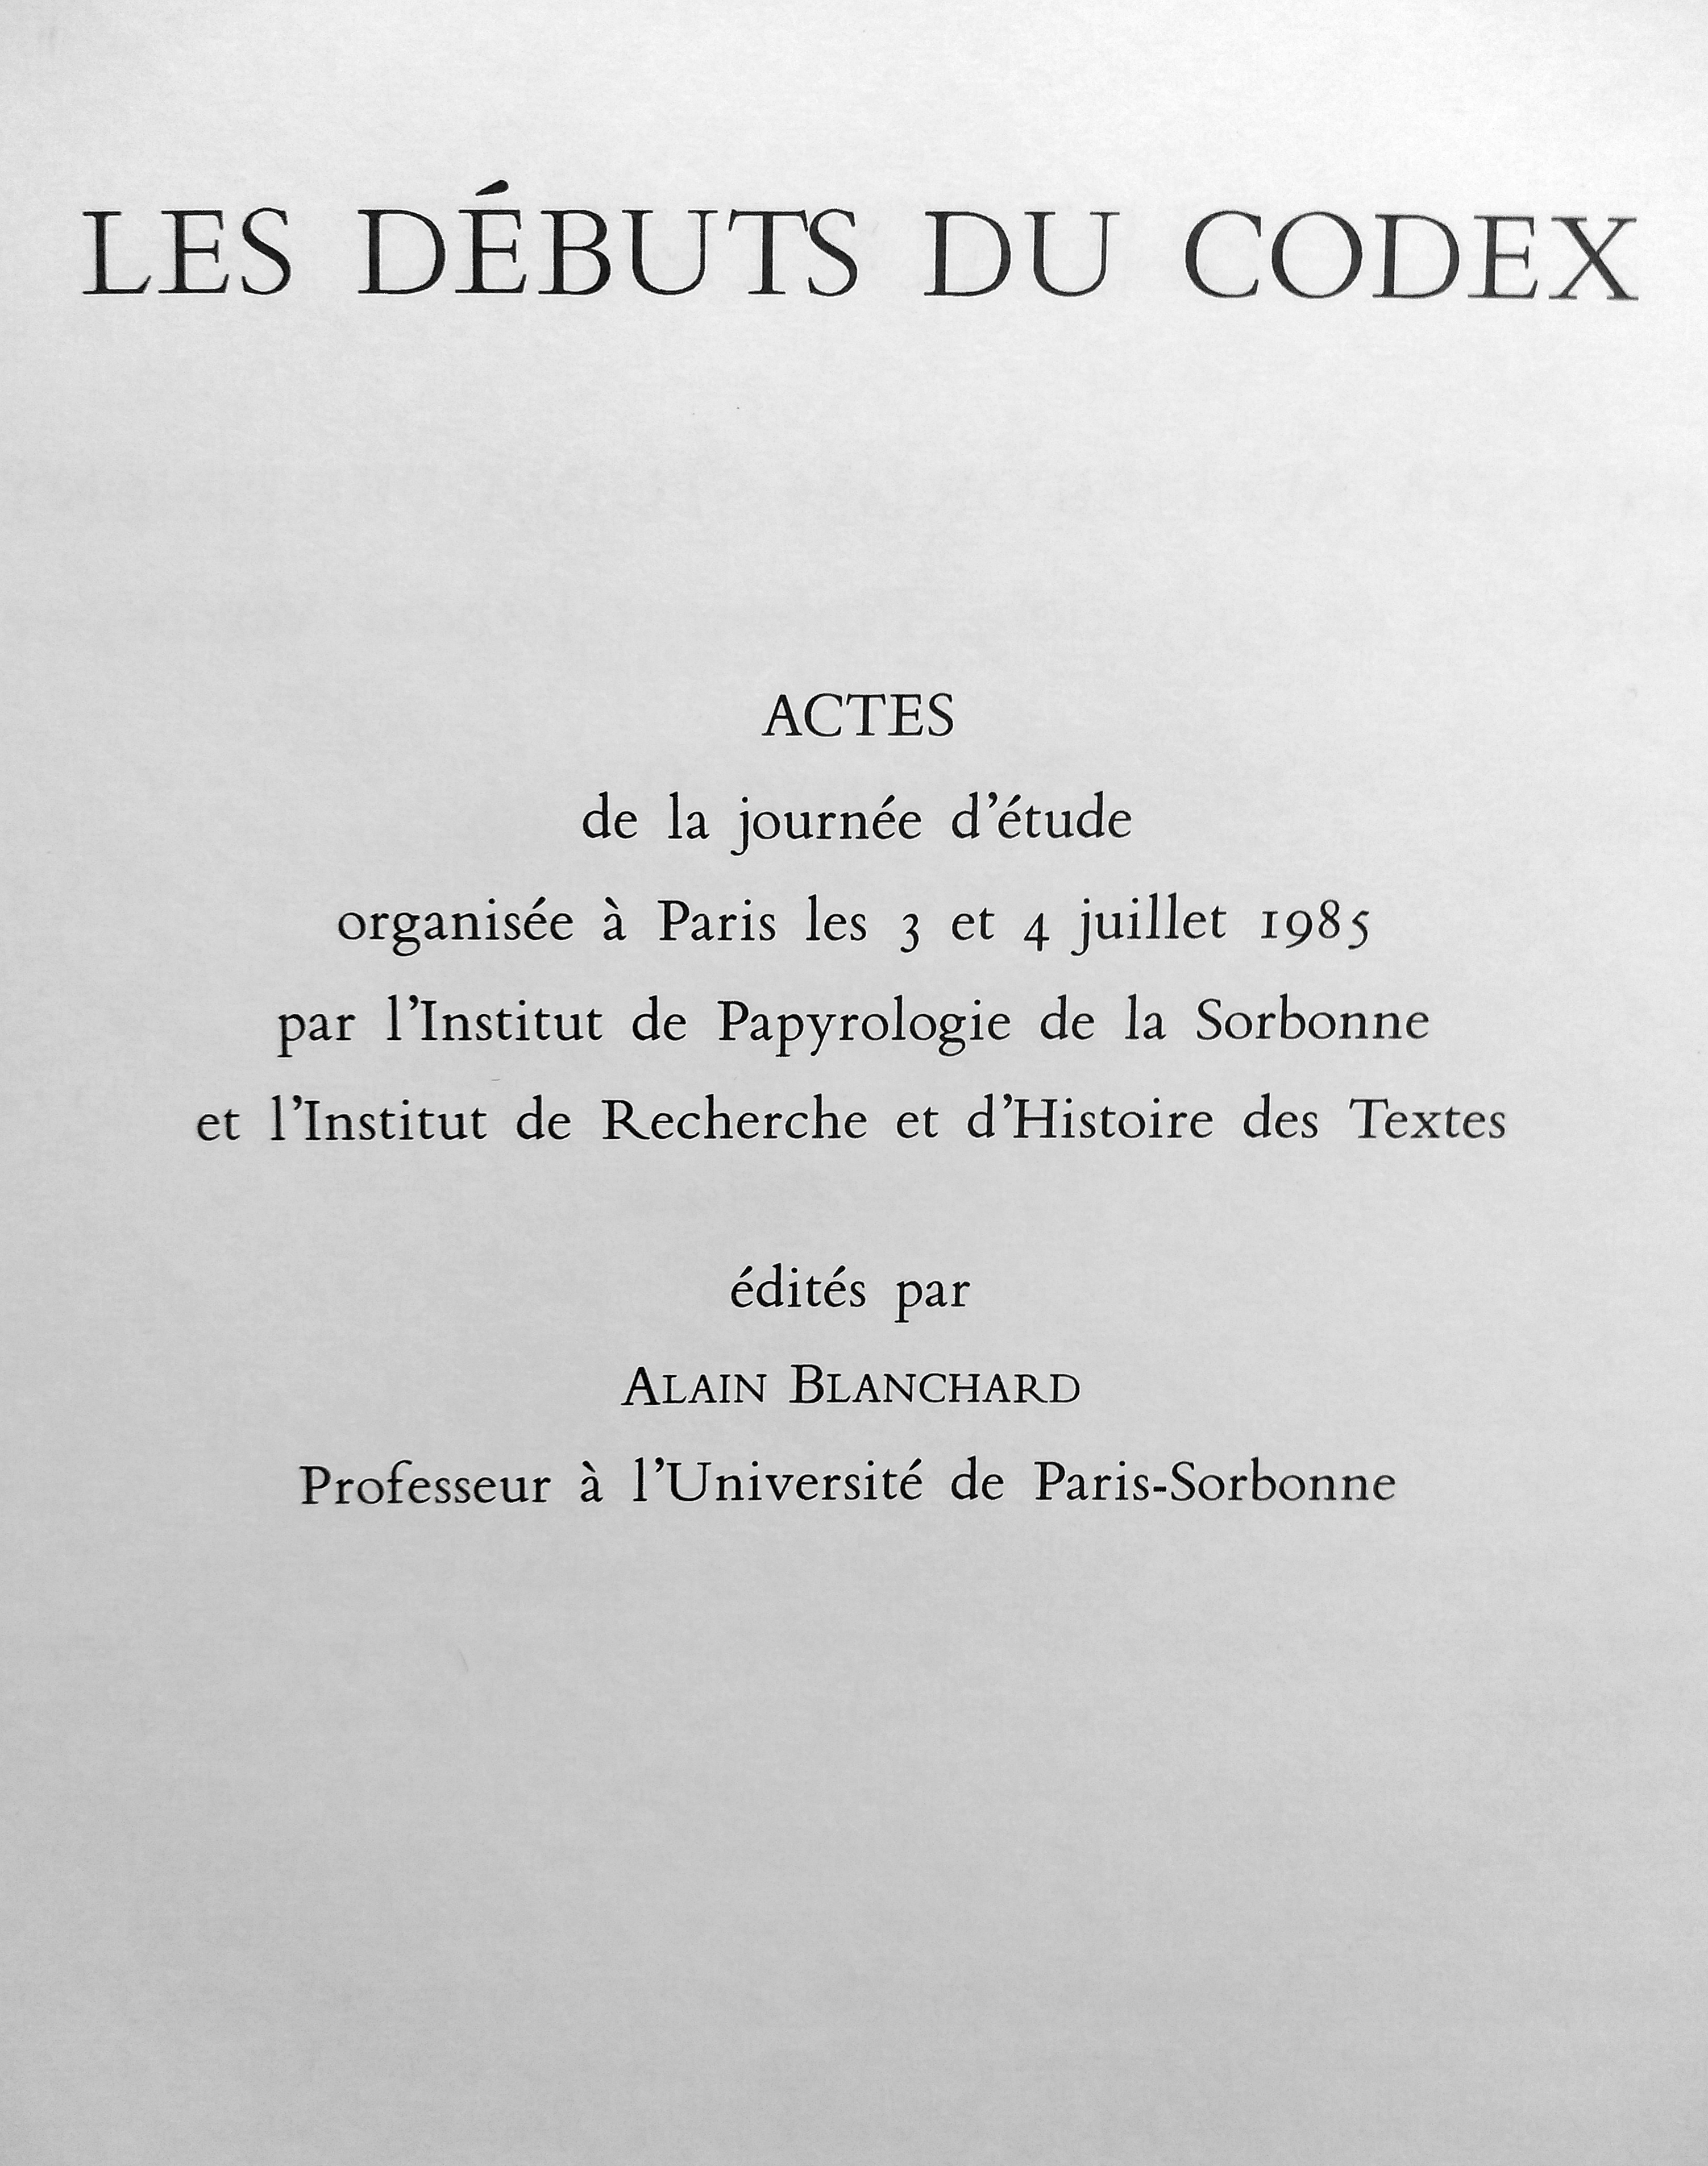 Les Debuts du Codex. Alain Blanchard